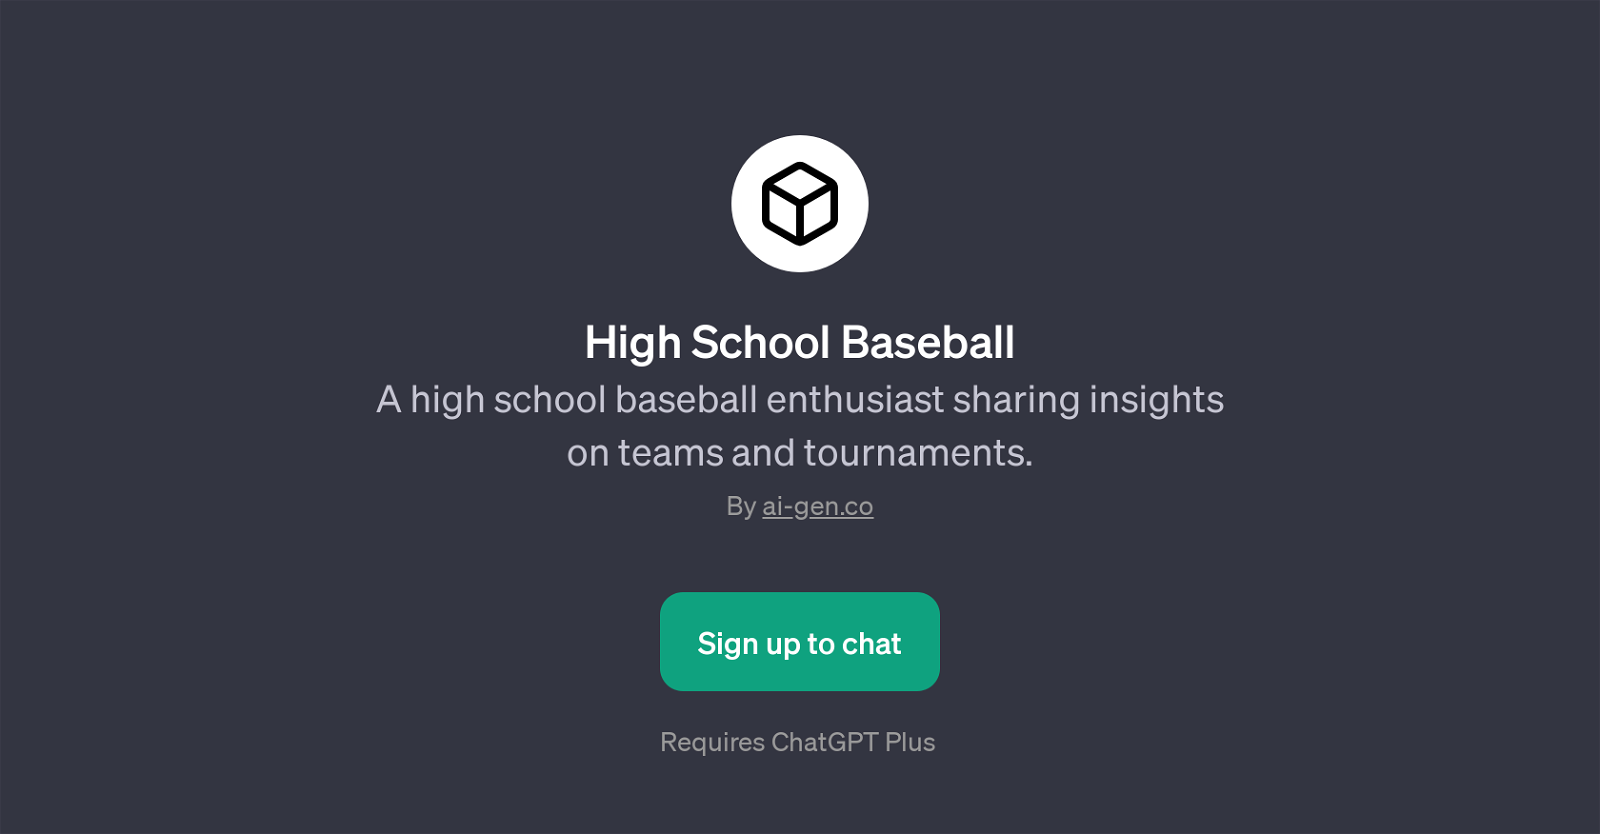 High School Baseball website